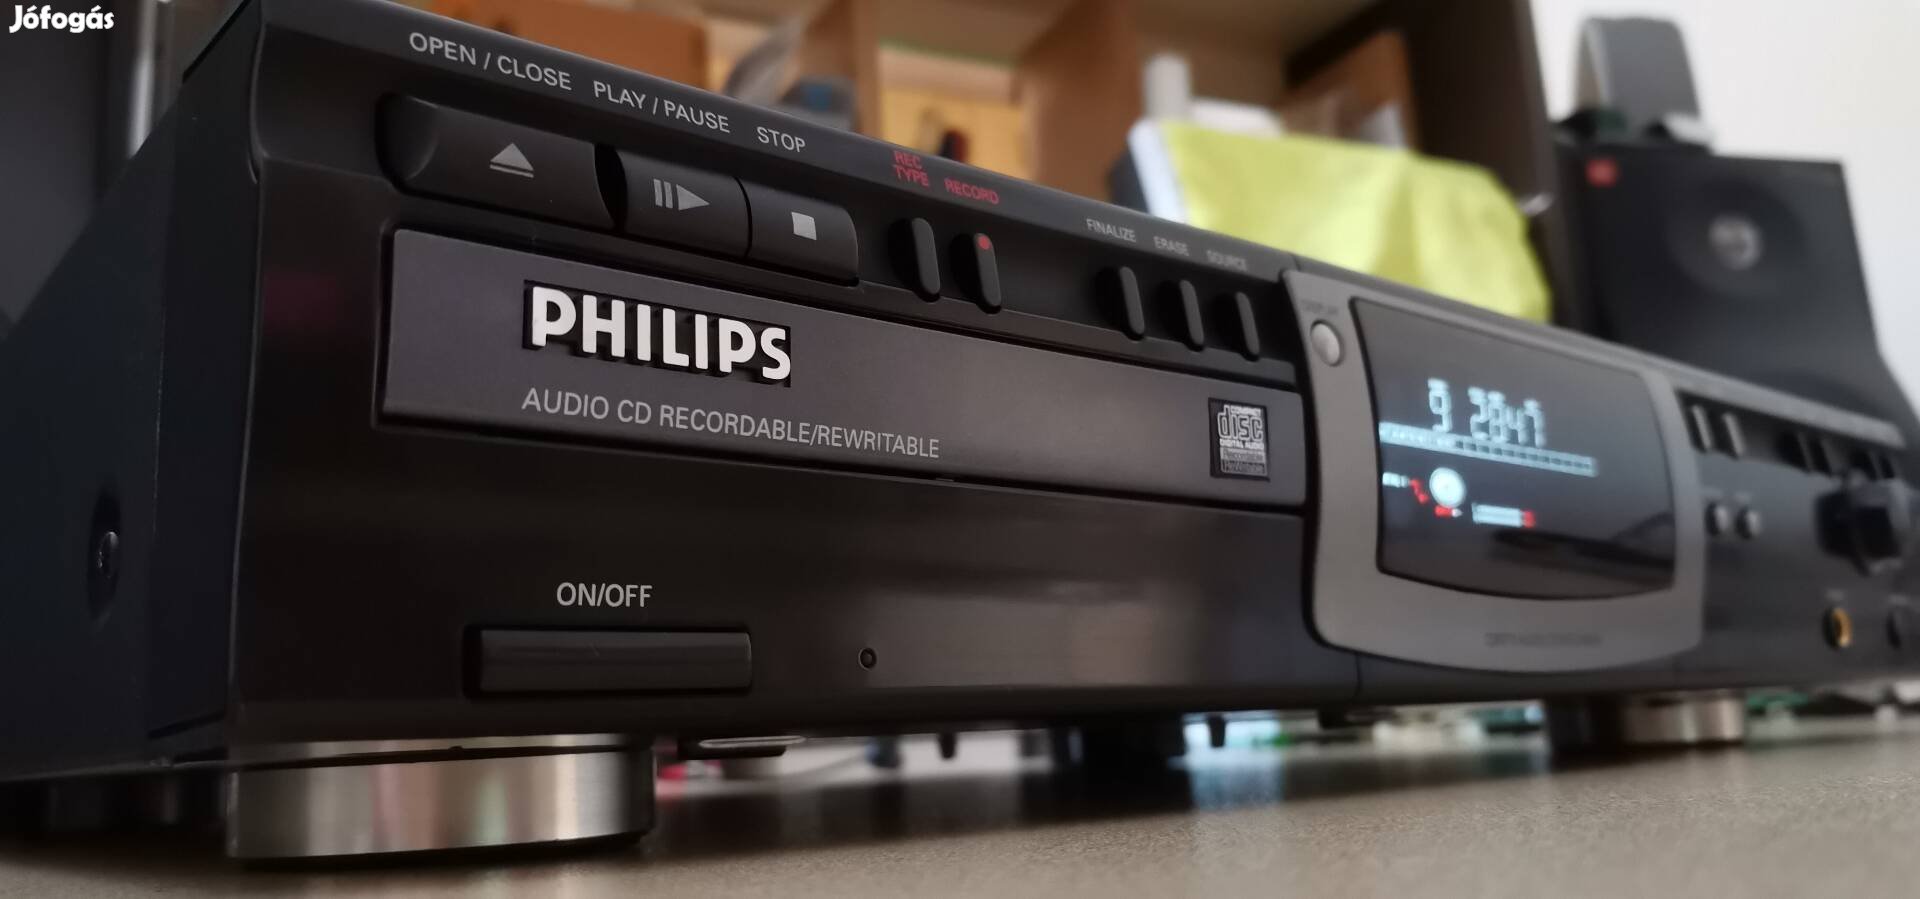 Philips CDR 770 cd író, lejátszó 